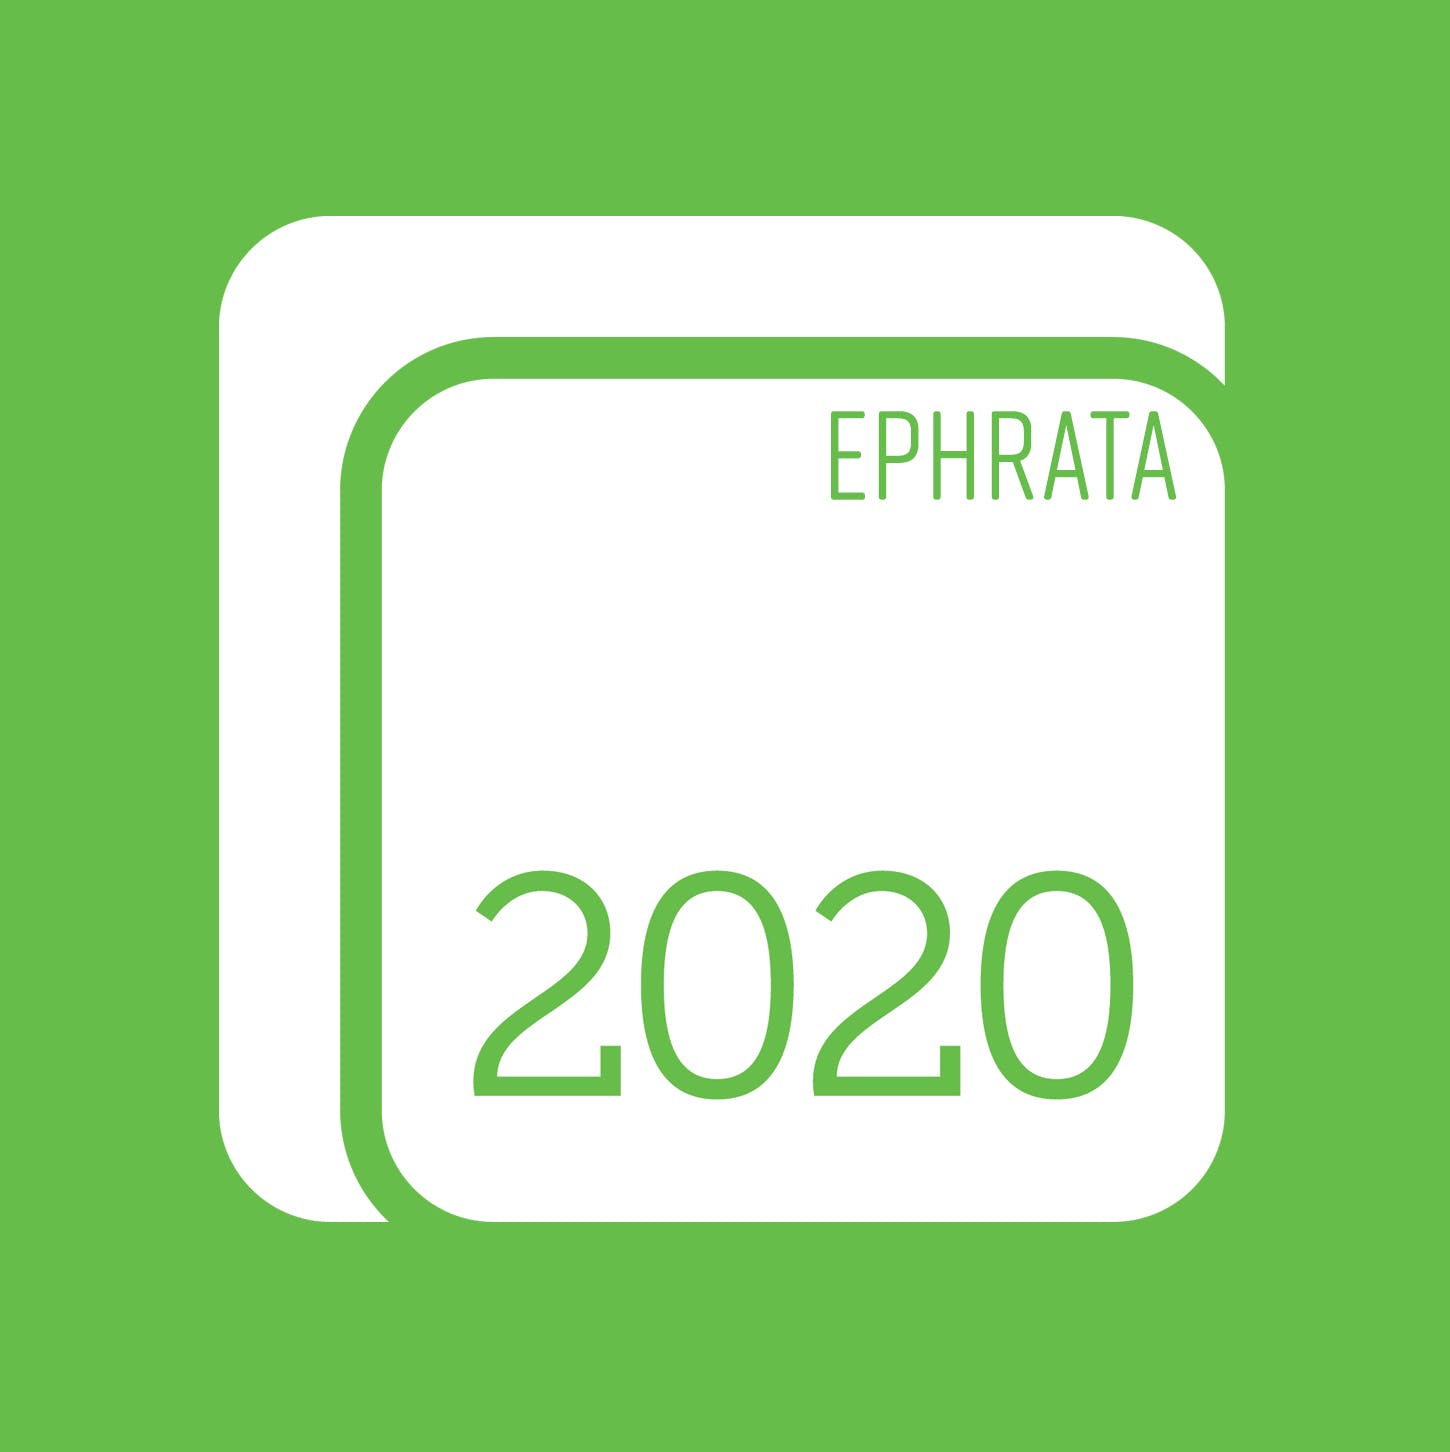 2020 Solutions - Ephrata - Medical Marijuana Doctors - Cannabizme.com